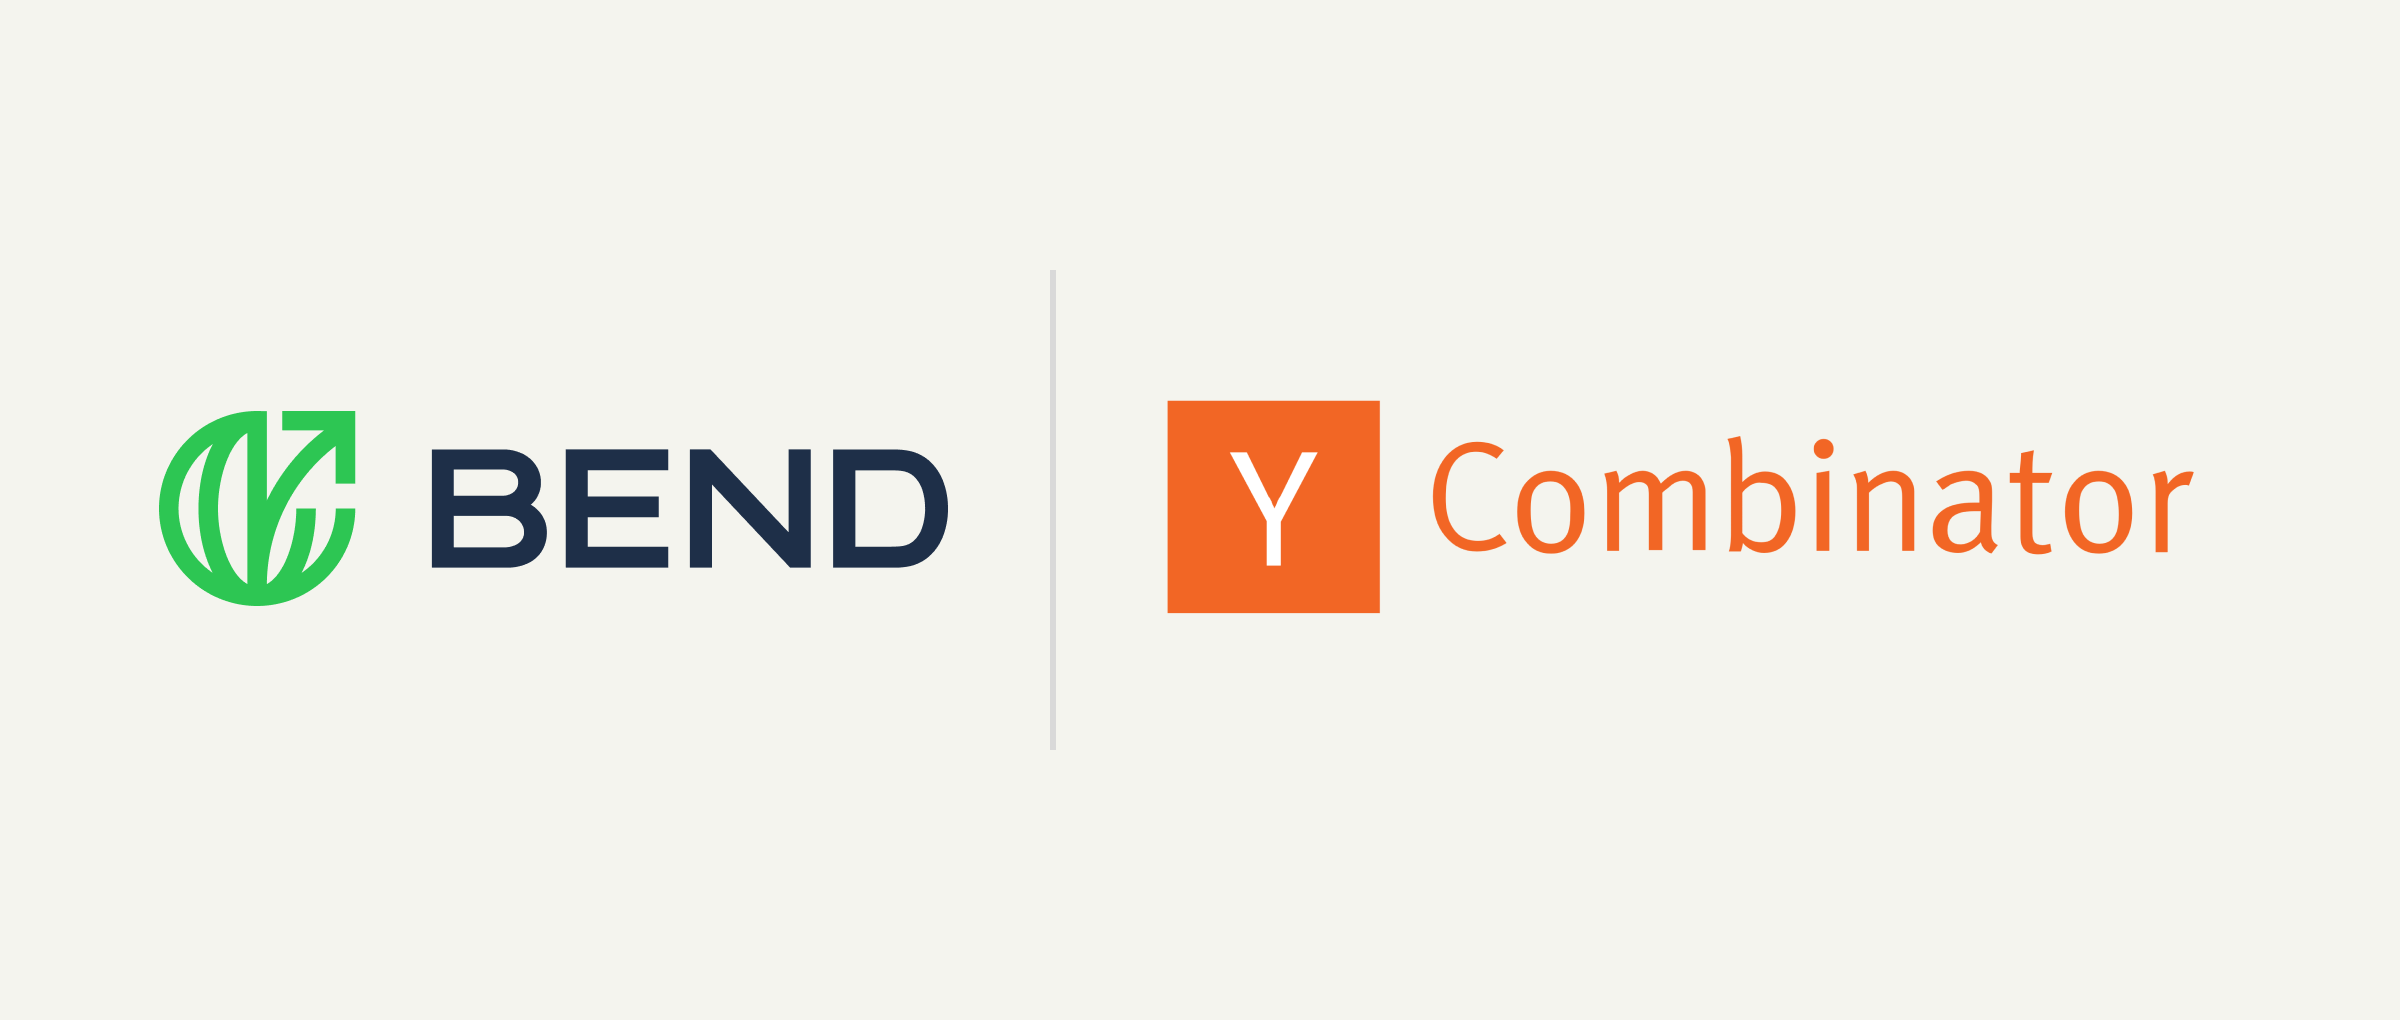 Bend and Y Combinator logos